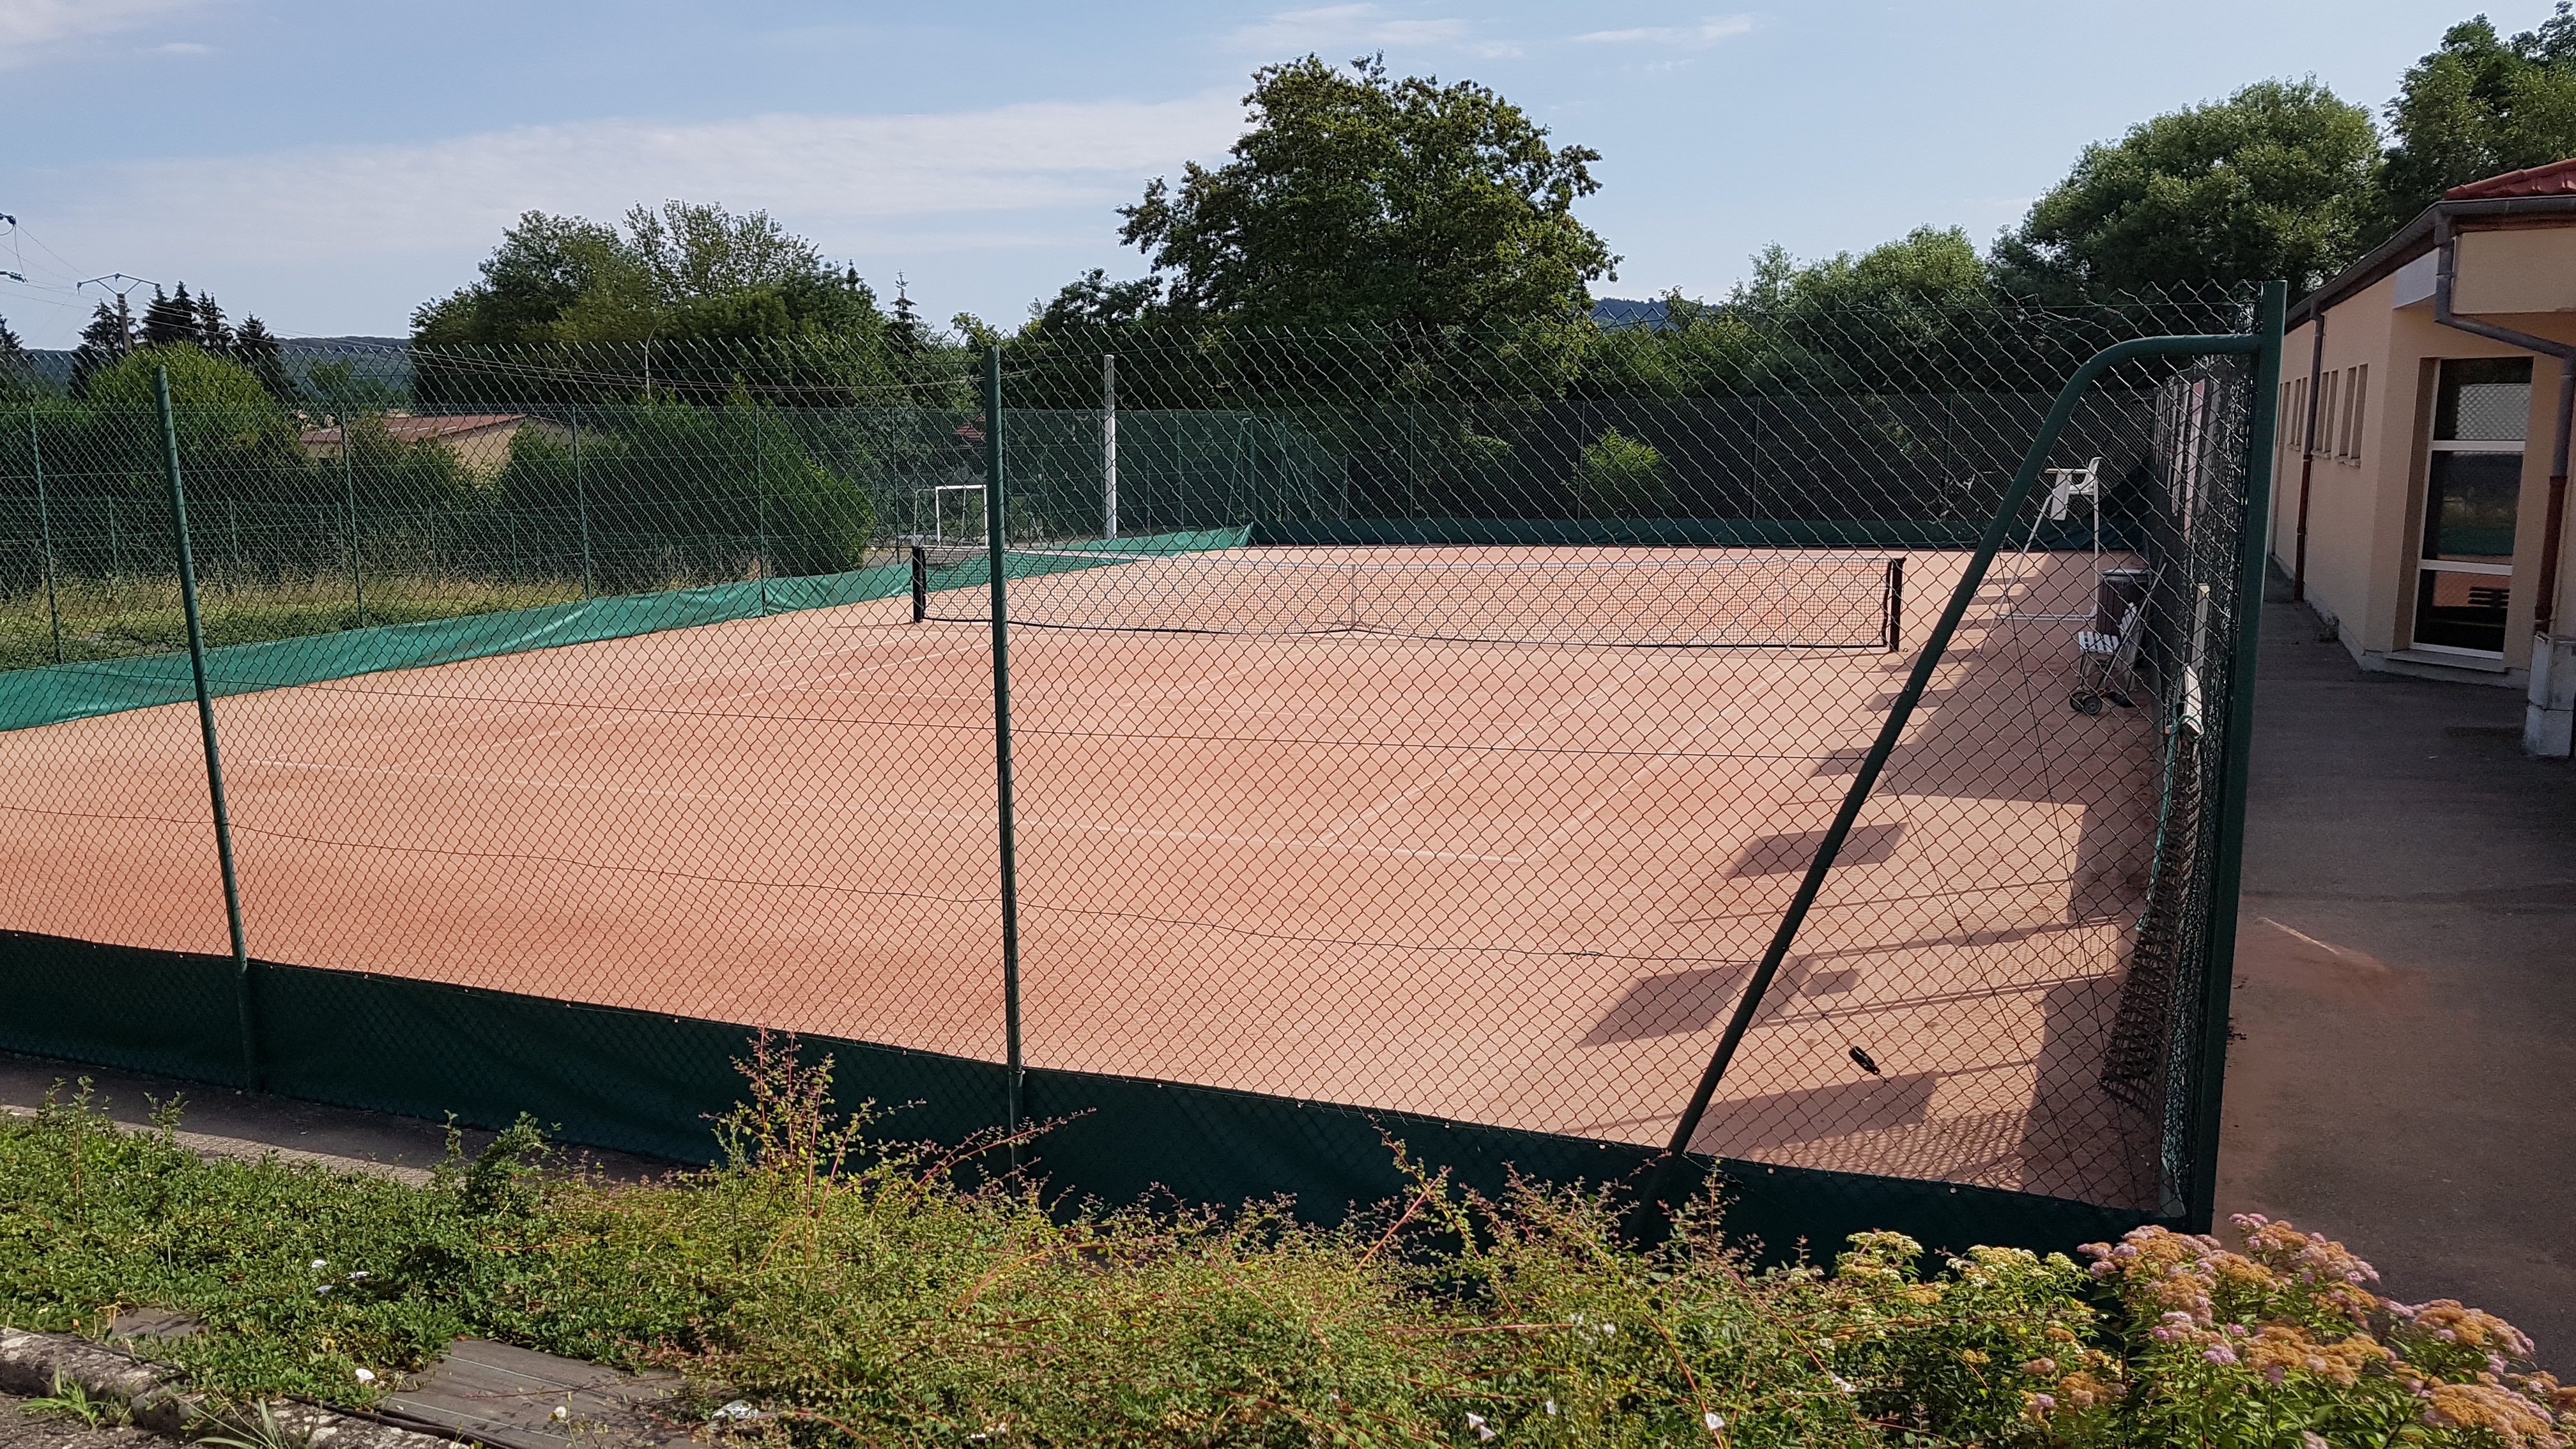 Court tennis